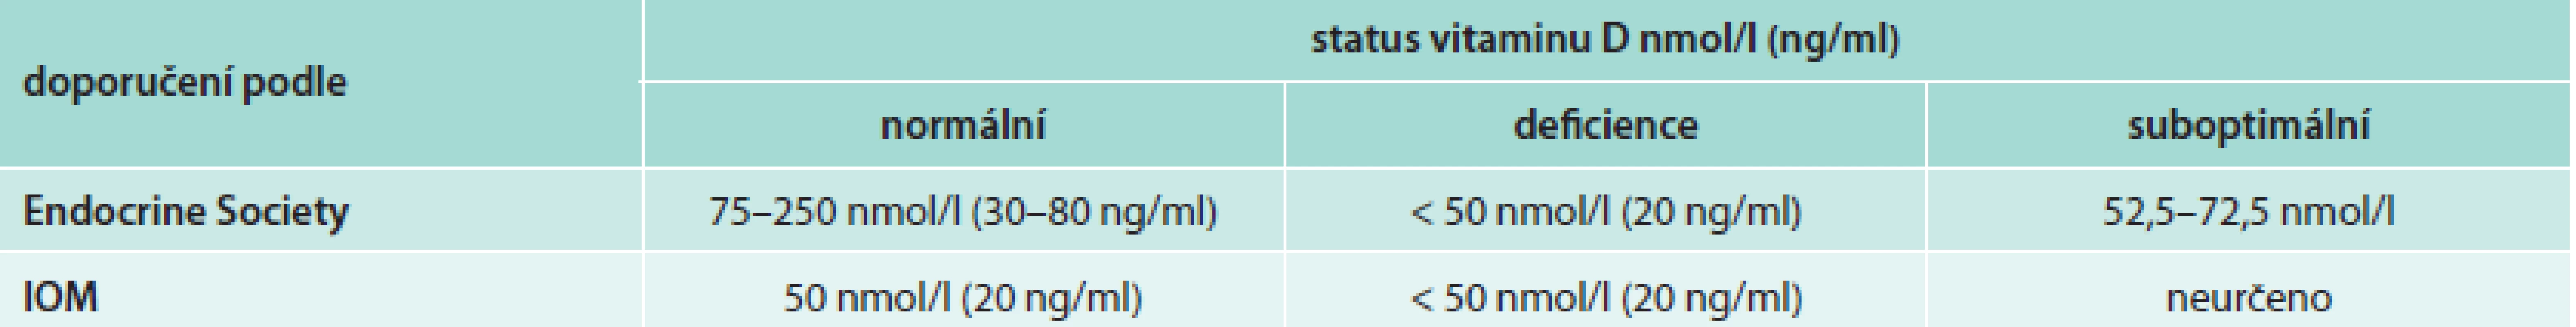 Srovnání statusu vitaminu D podle doporučení Endocrine Society a IOM [21,22]